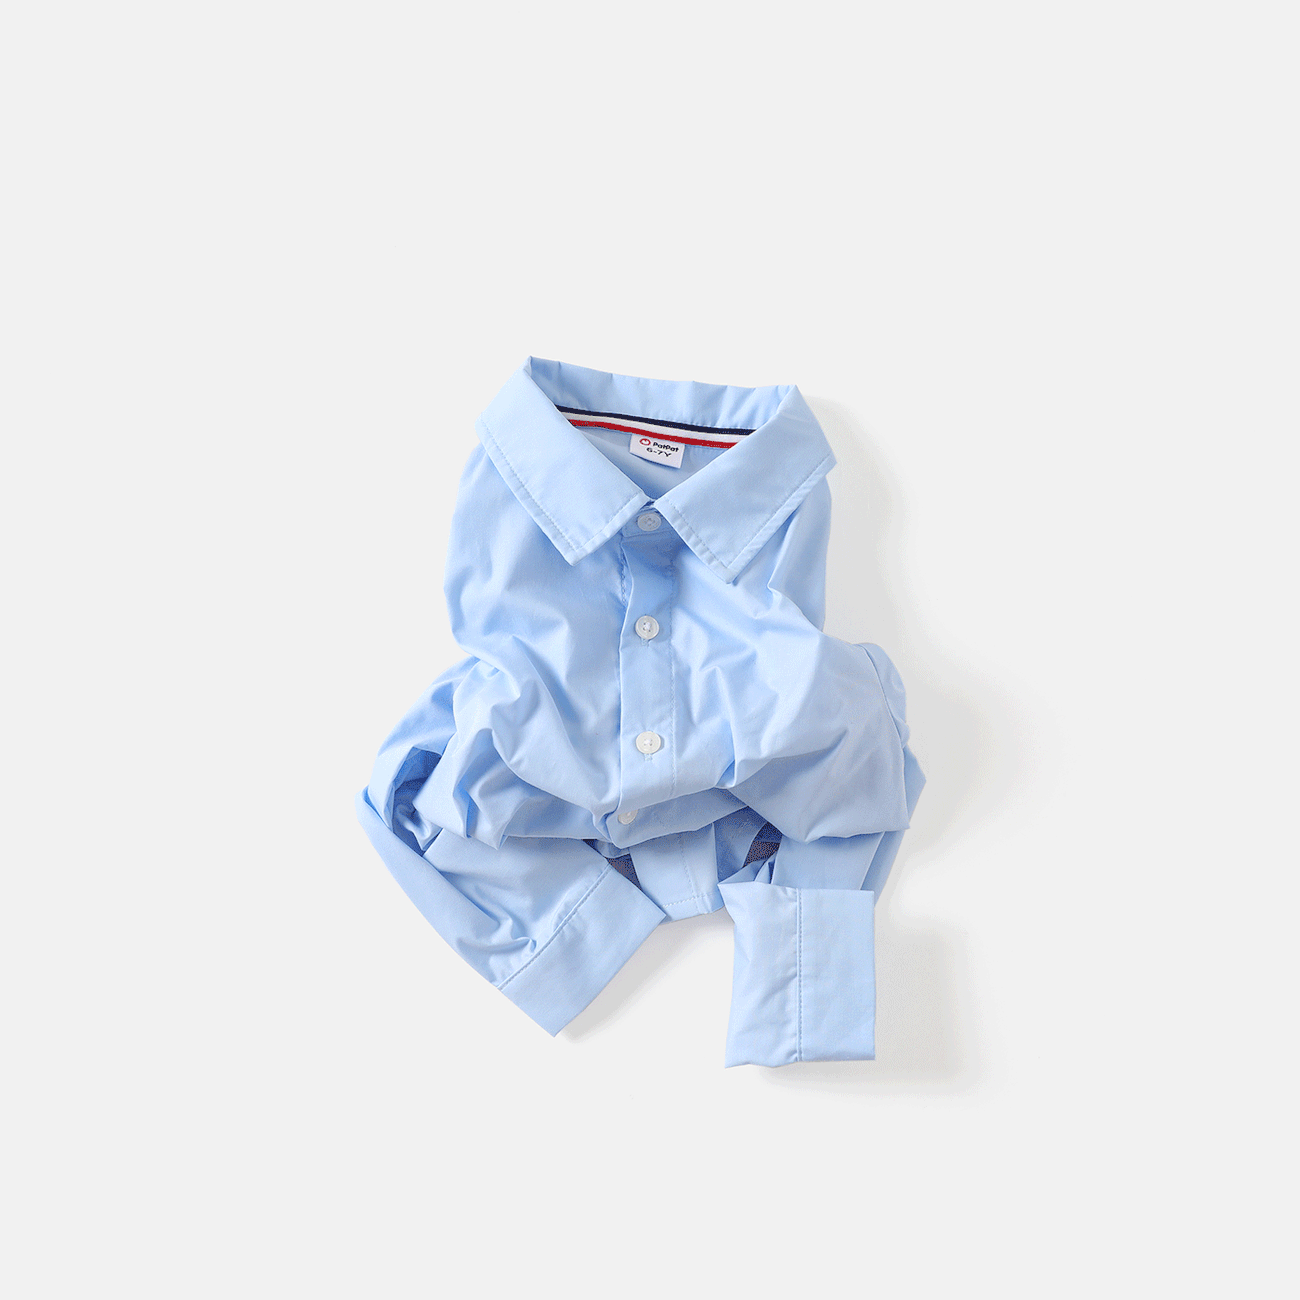 Toddler Boy/Girl School Uniform Chemise à manches longues Bleu big image 1